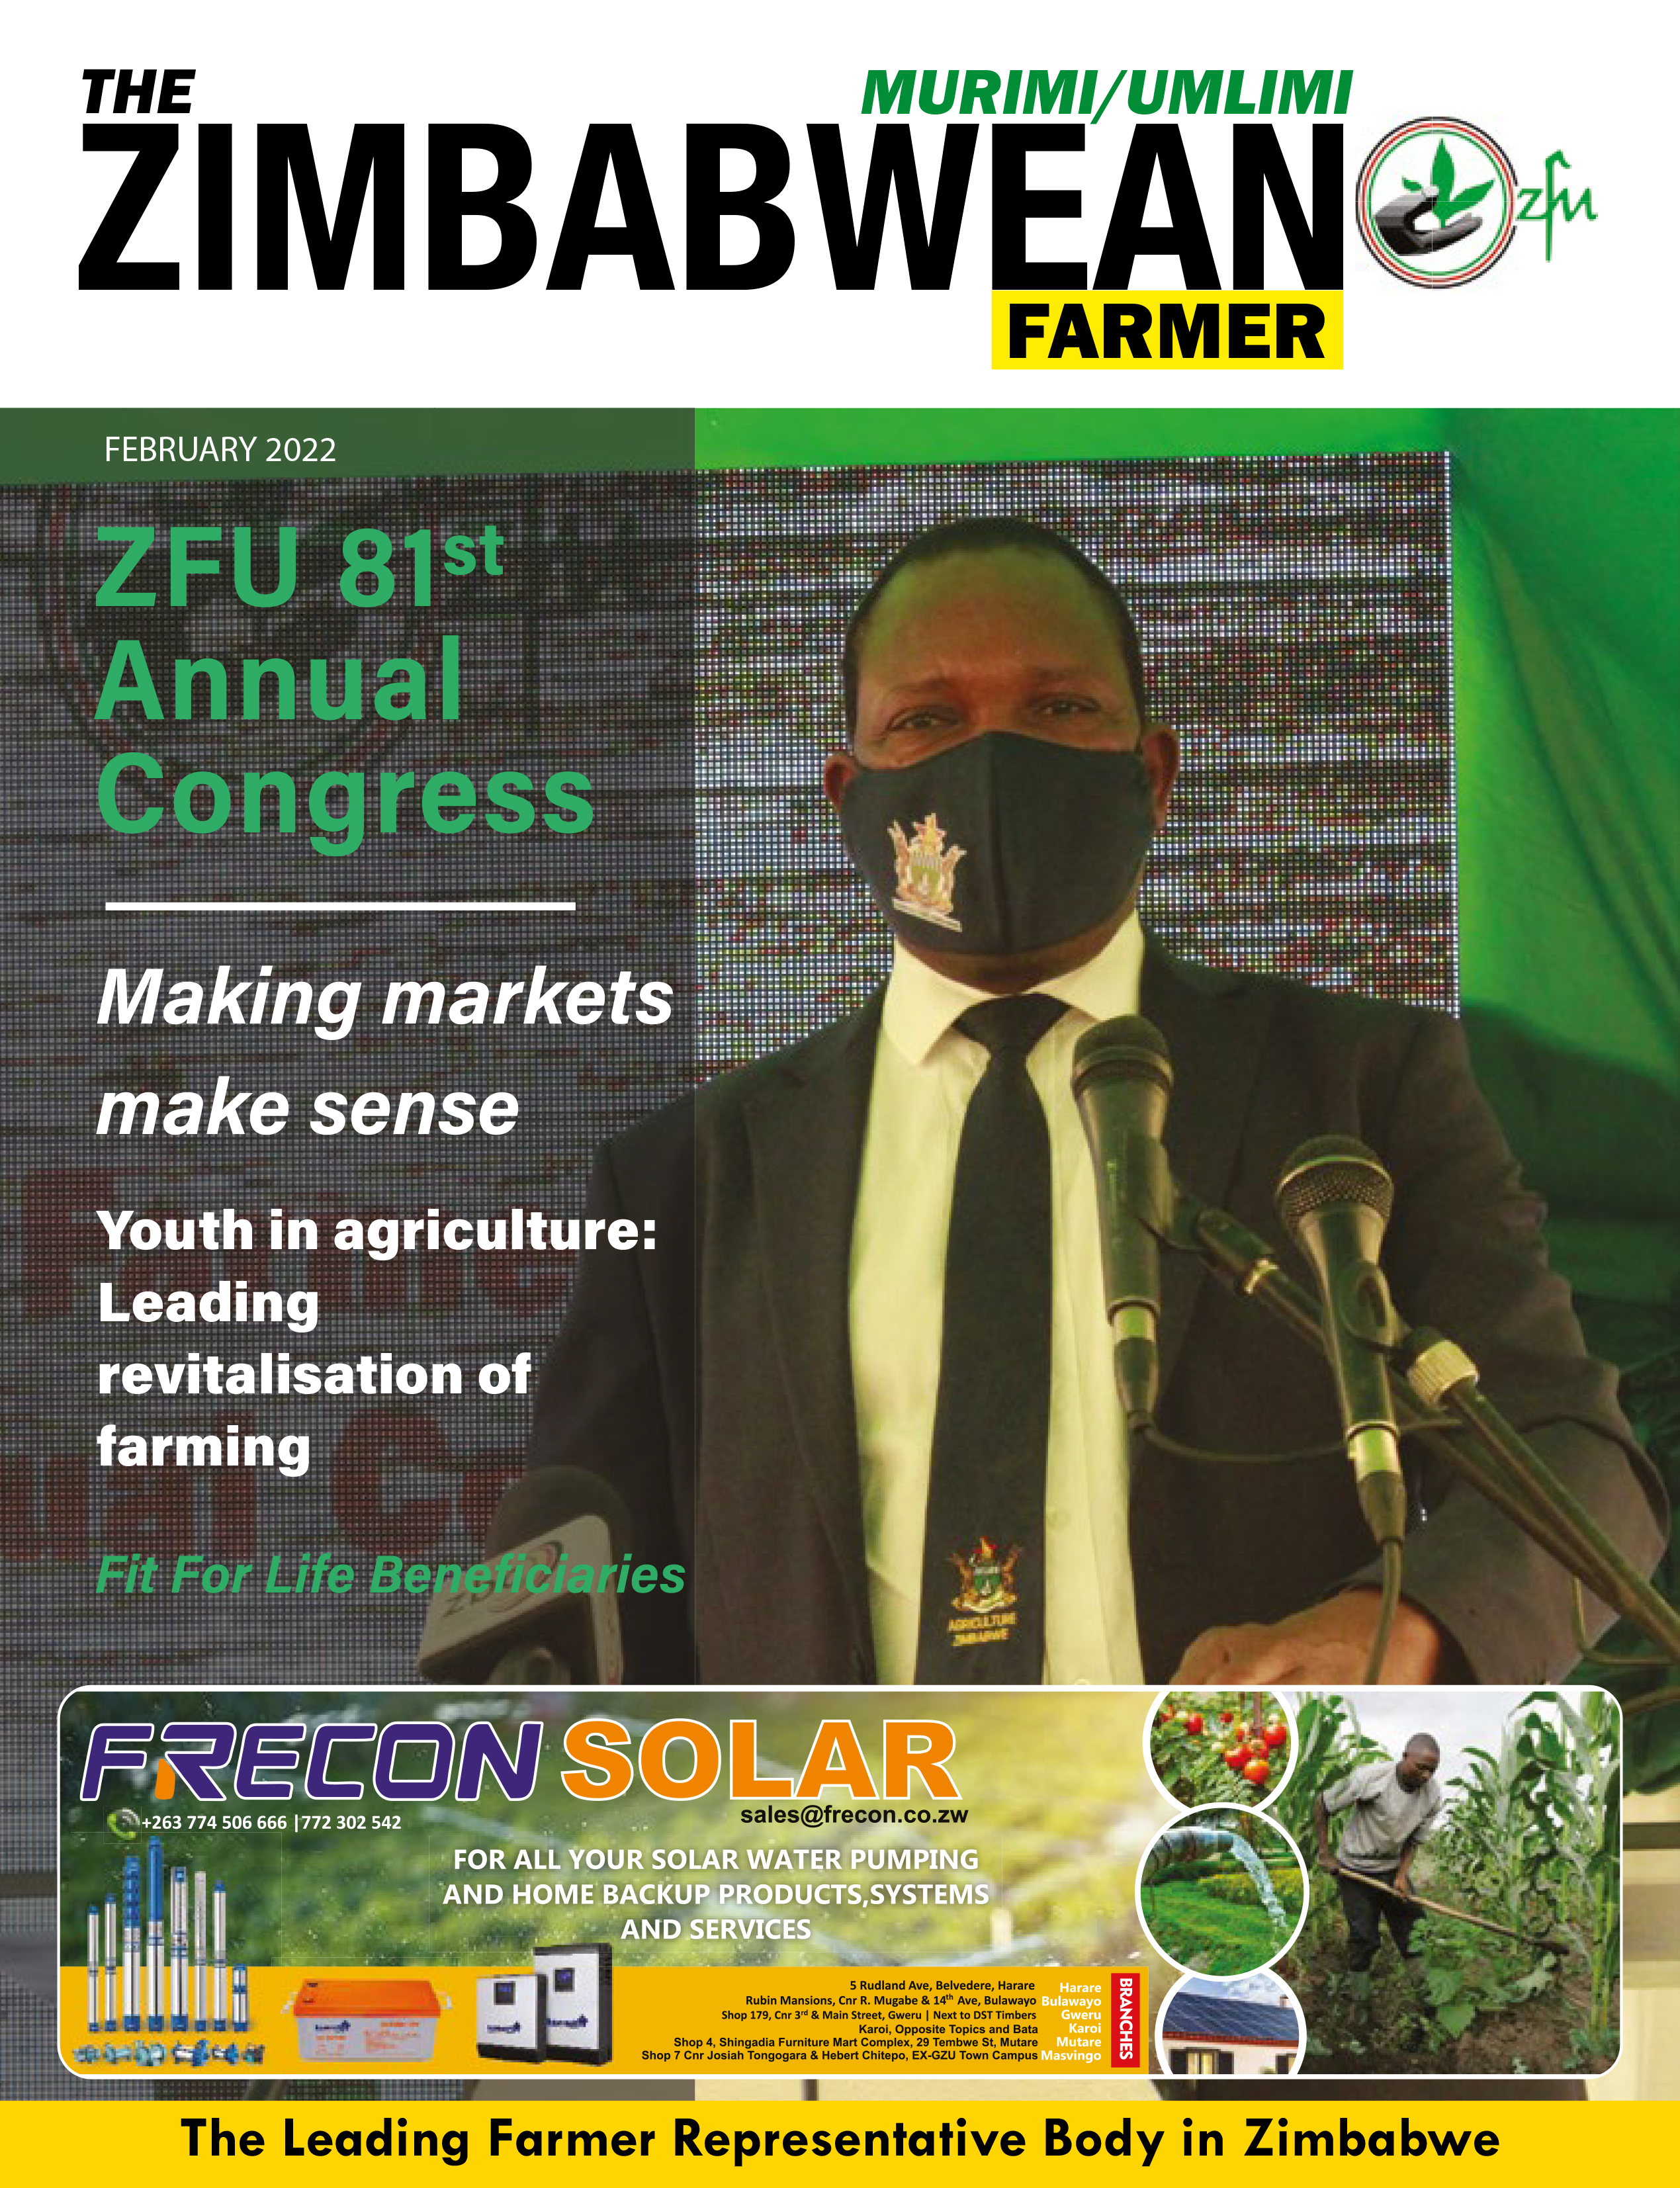 The Zimbabwean Farmer, Murimi/Umlimi Magazine Volume 1 2022